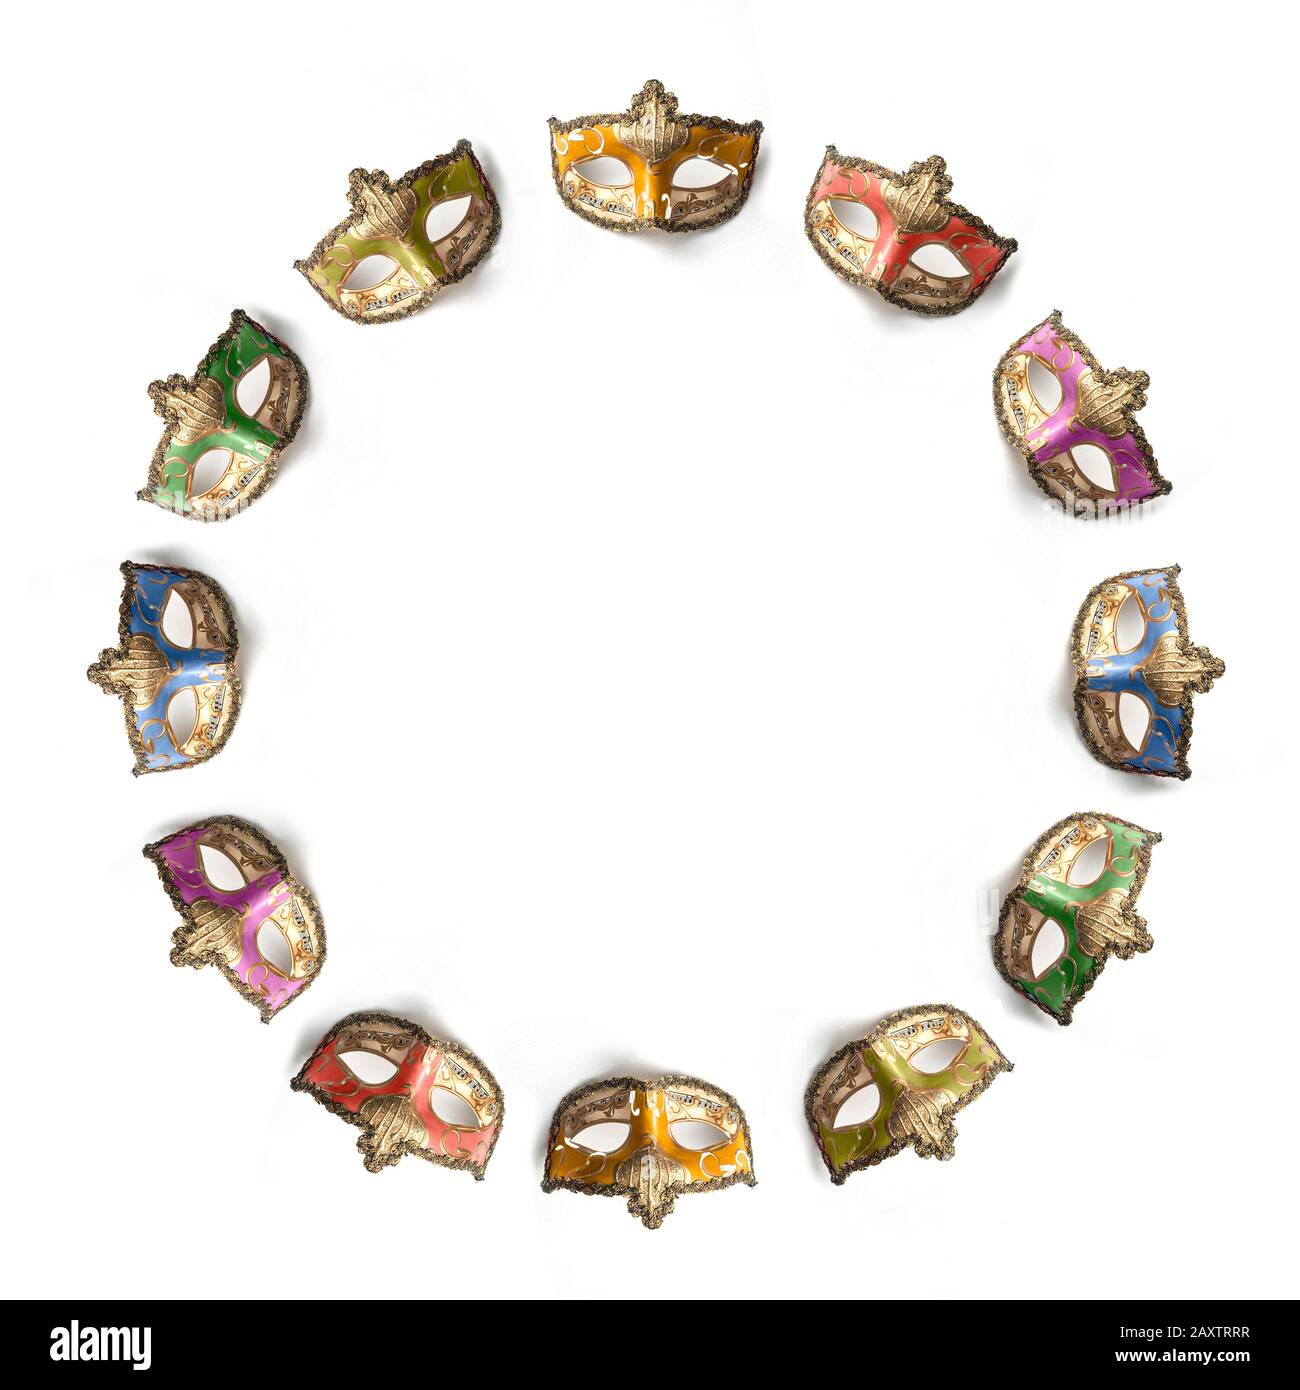 Zwölf Theater- oder mardi Gras-venetianische Masken, die in einem Kreis auf weißem Hintergrund angeordnet sind Stockfoto